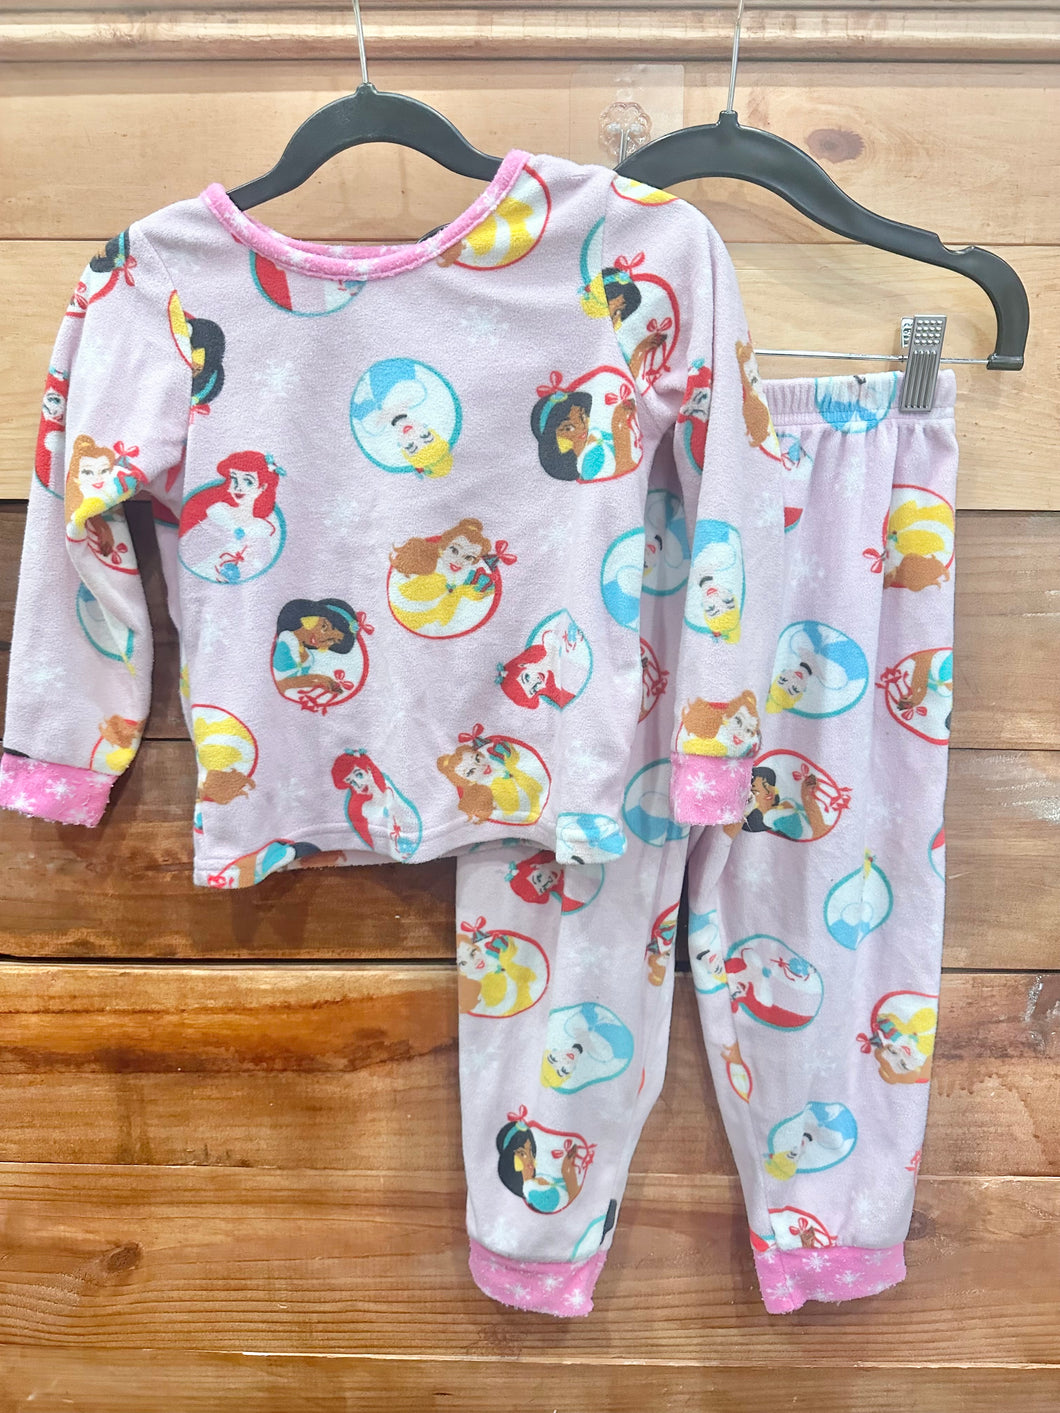 Disney Princess Pajamas Size 4T